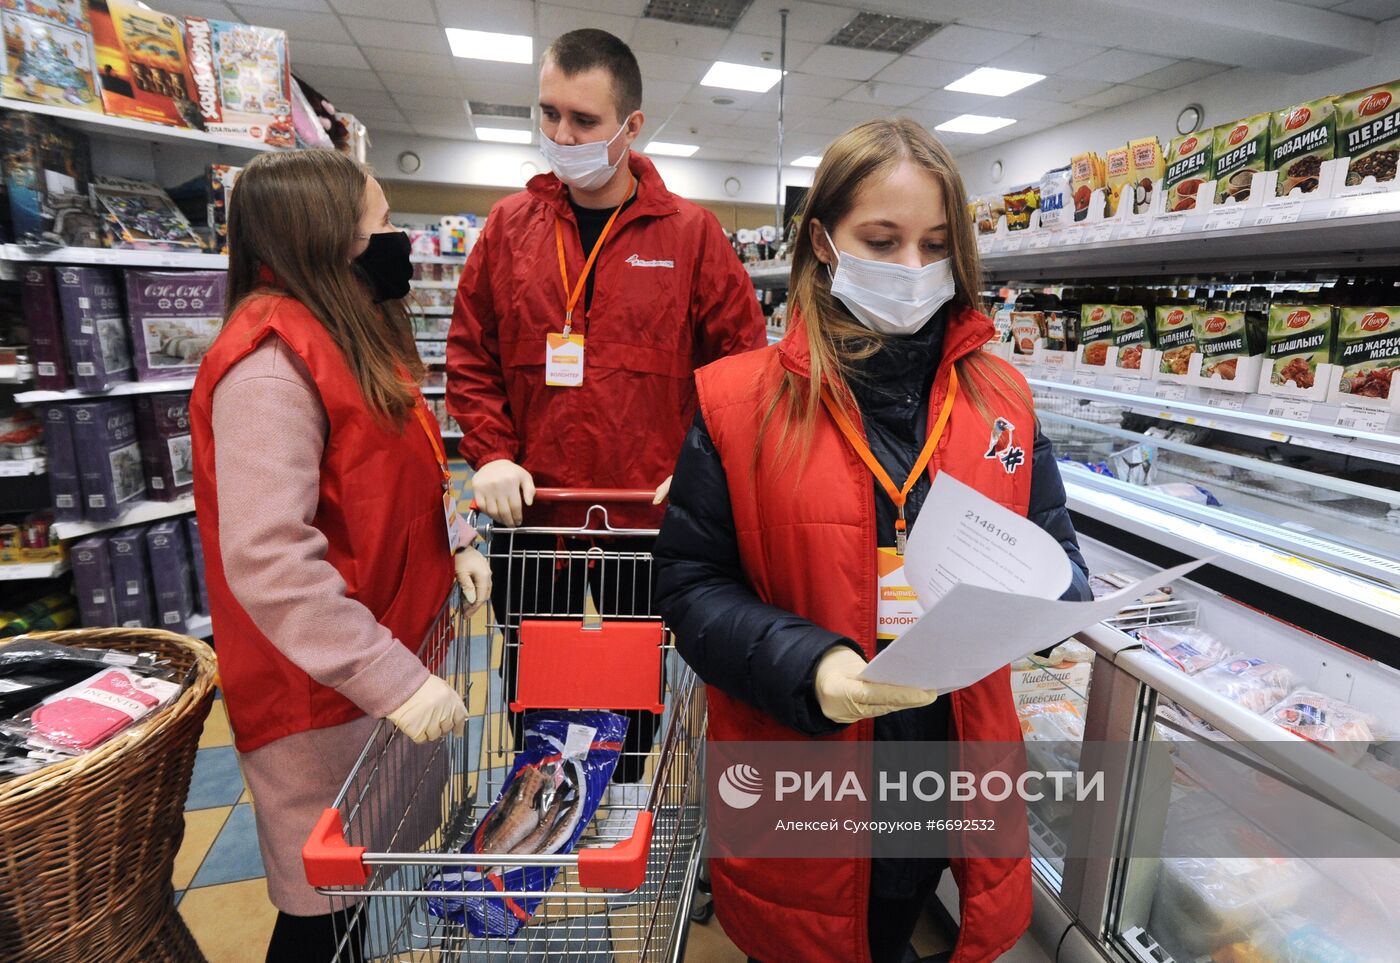 Работа волонтеров в рамках Всероссийской акции "Мы вместе" в регионах России